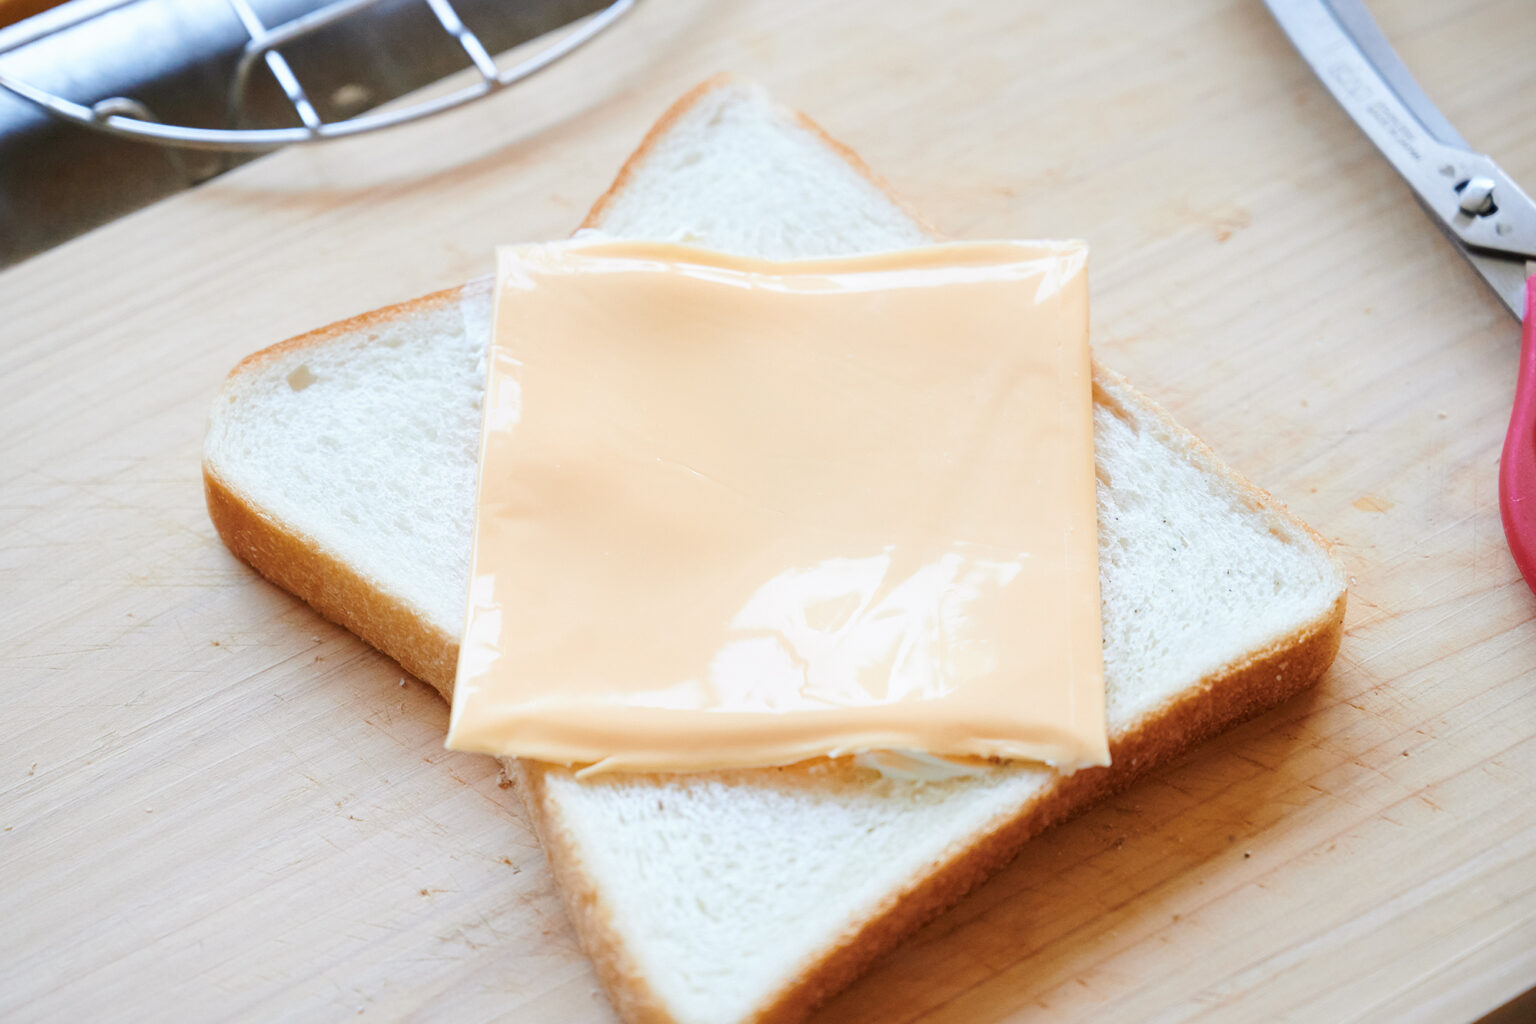 【POINT】スライスチェダーチーズはひし形にのせて。